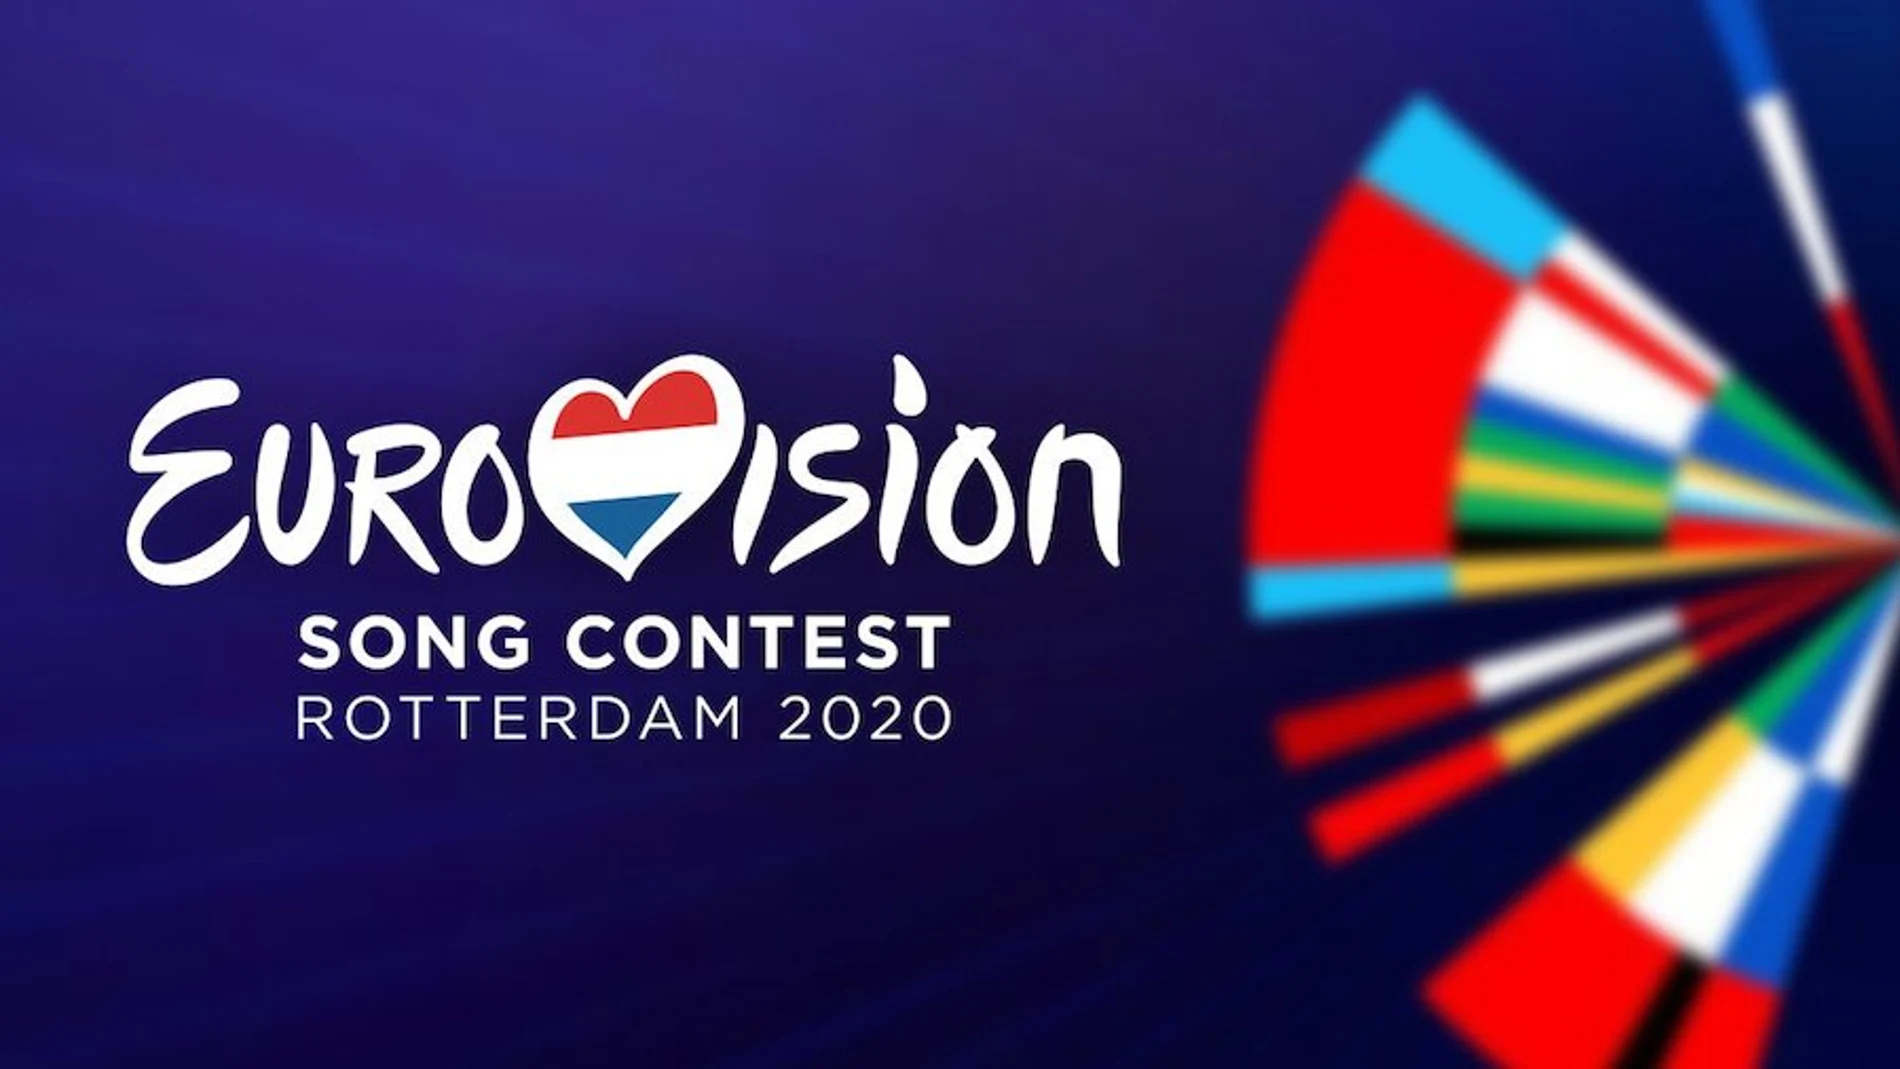 Eurovisión 2020: Todas las canciones del Festival de Eurovisión